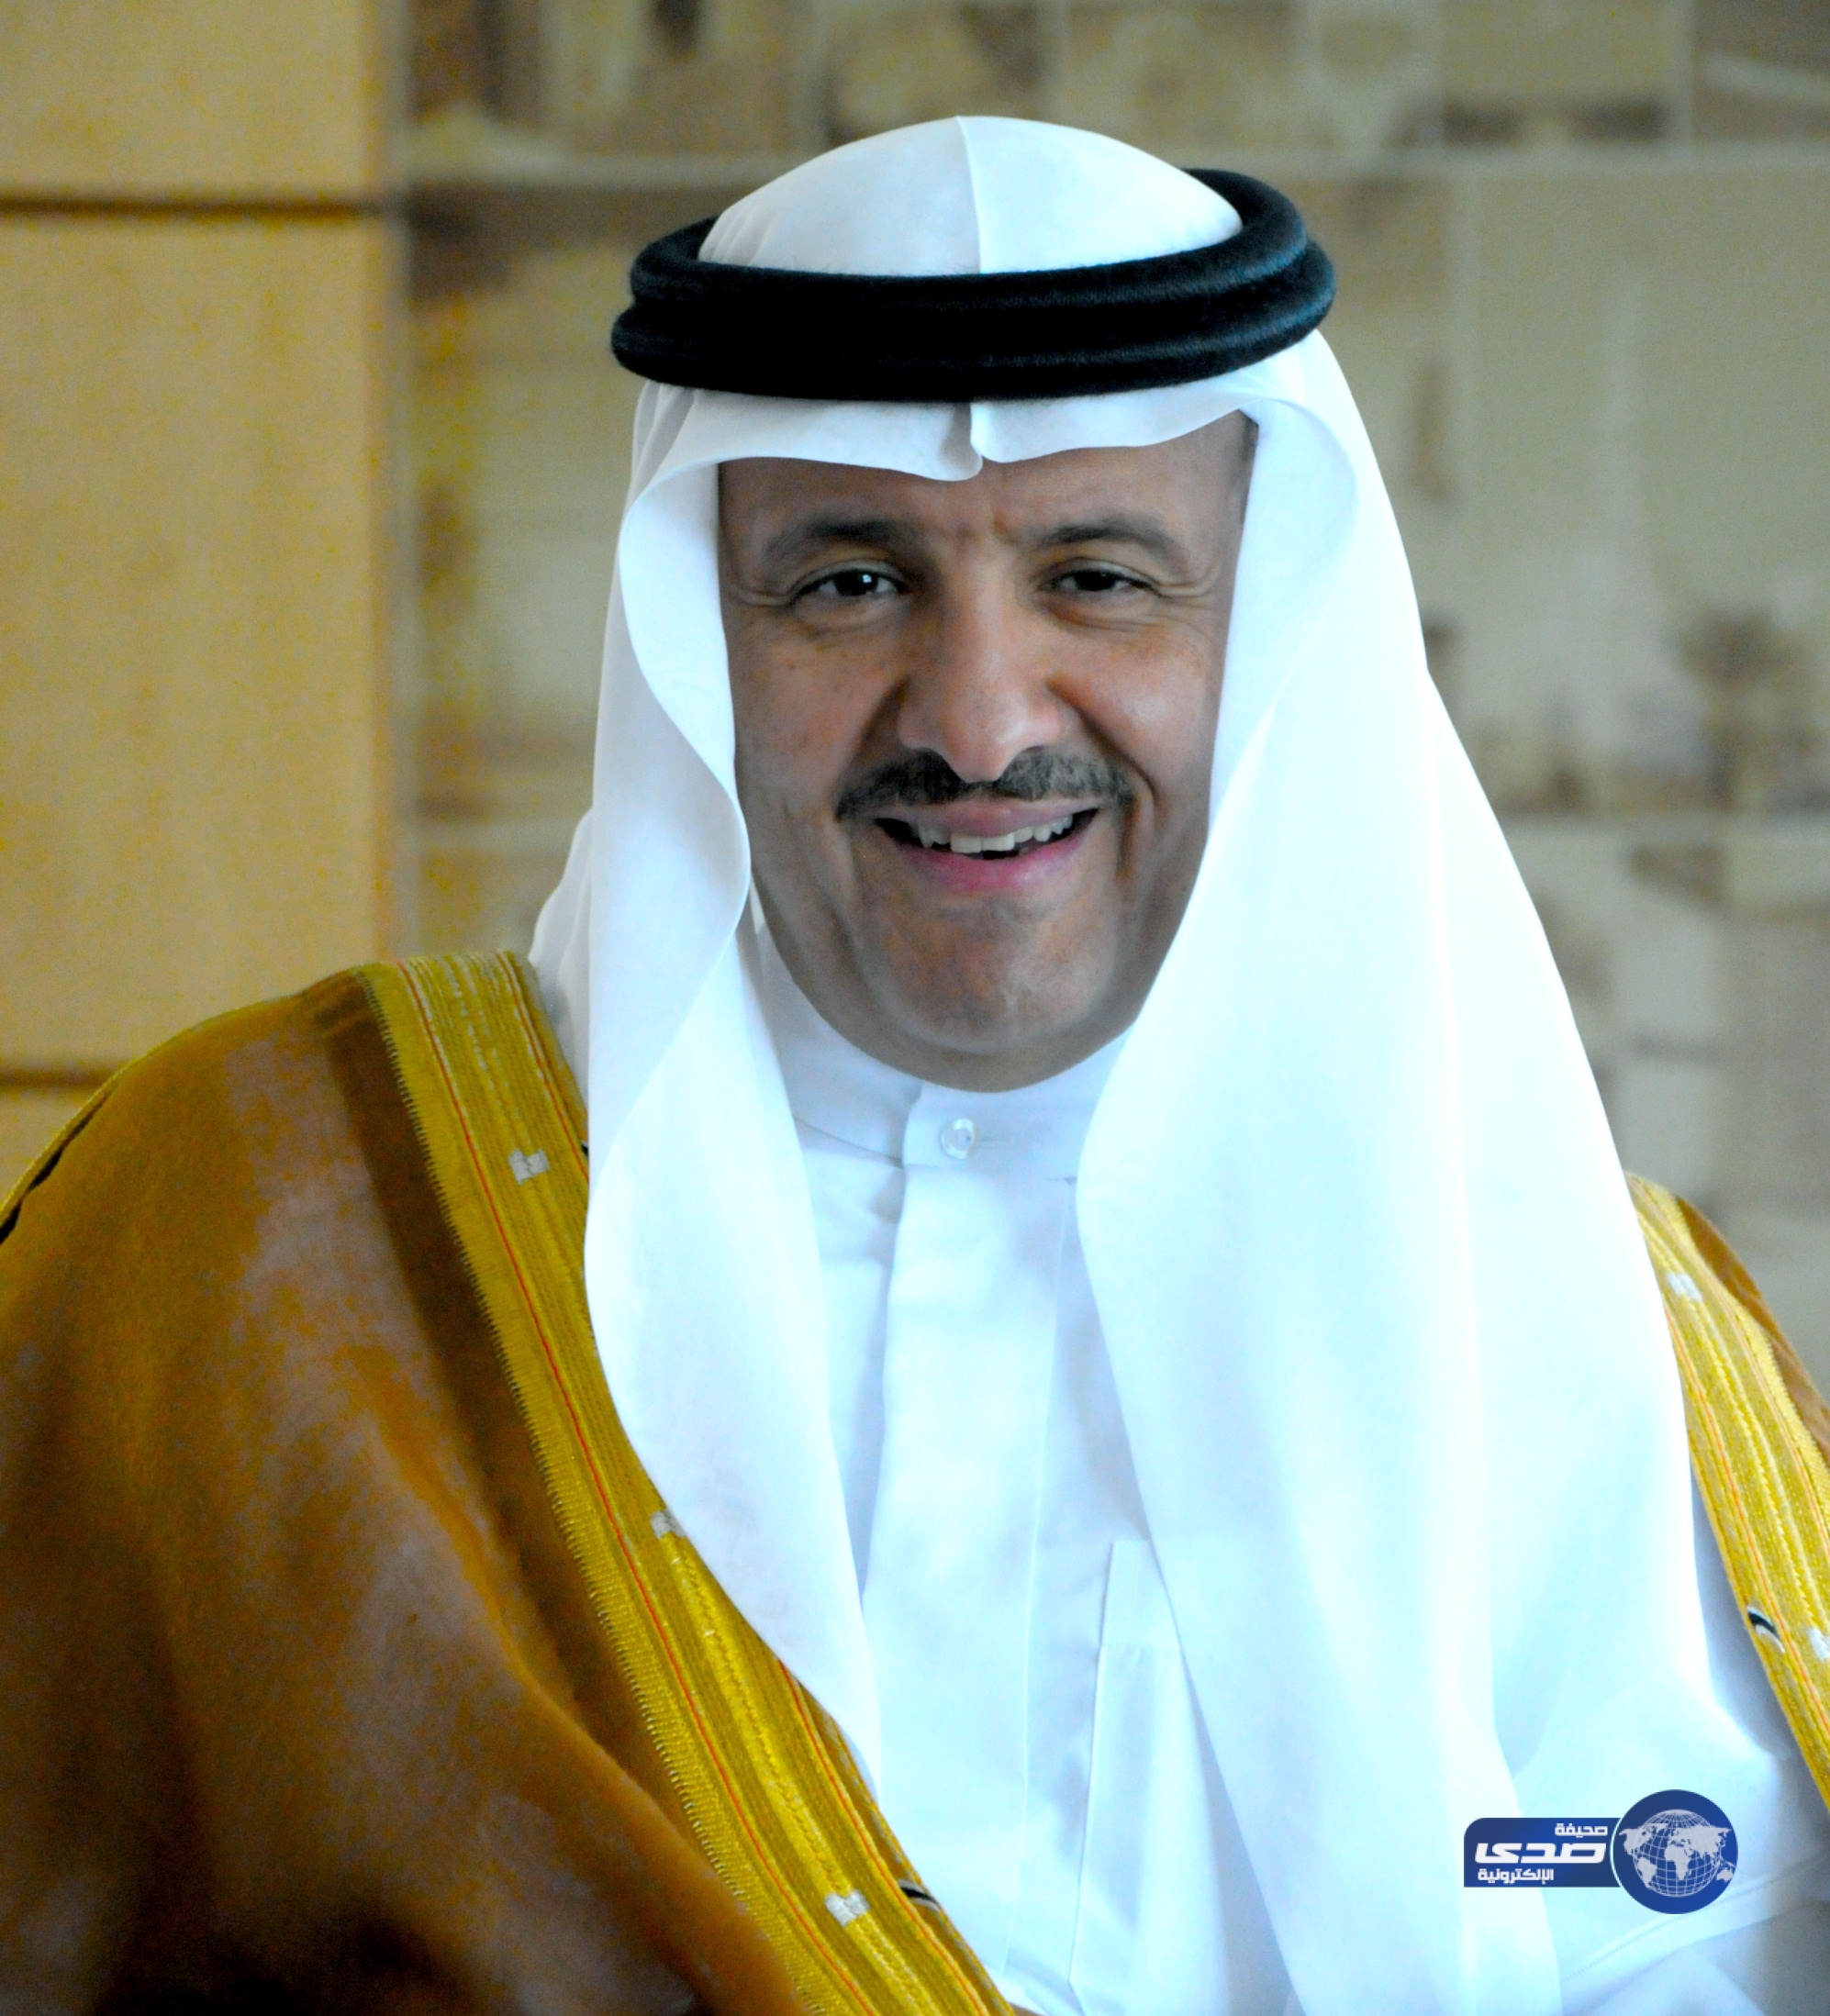 الأمير سلطان بن سلمان يروي جوانب من سمات شخصية خادم الحرمين